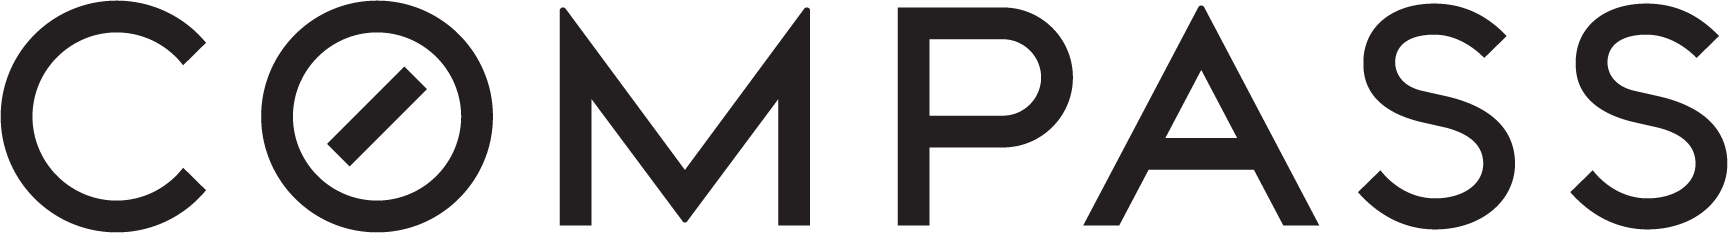 Compass logo, horizontal, black